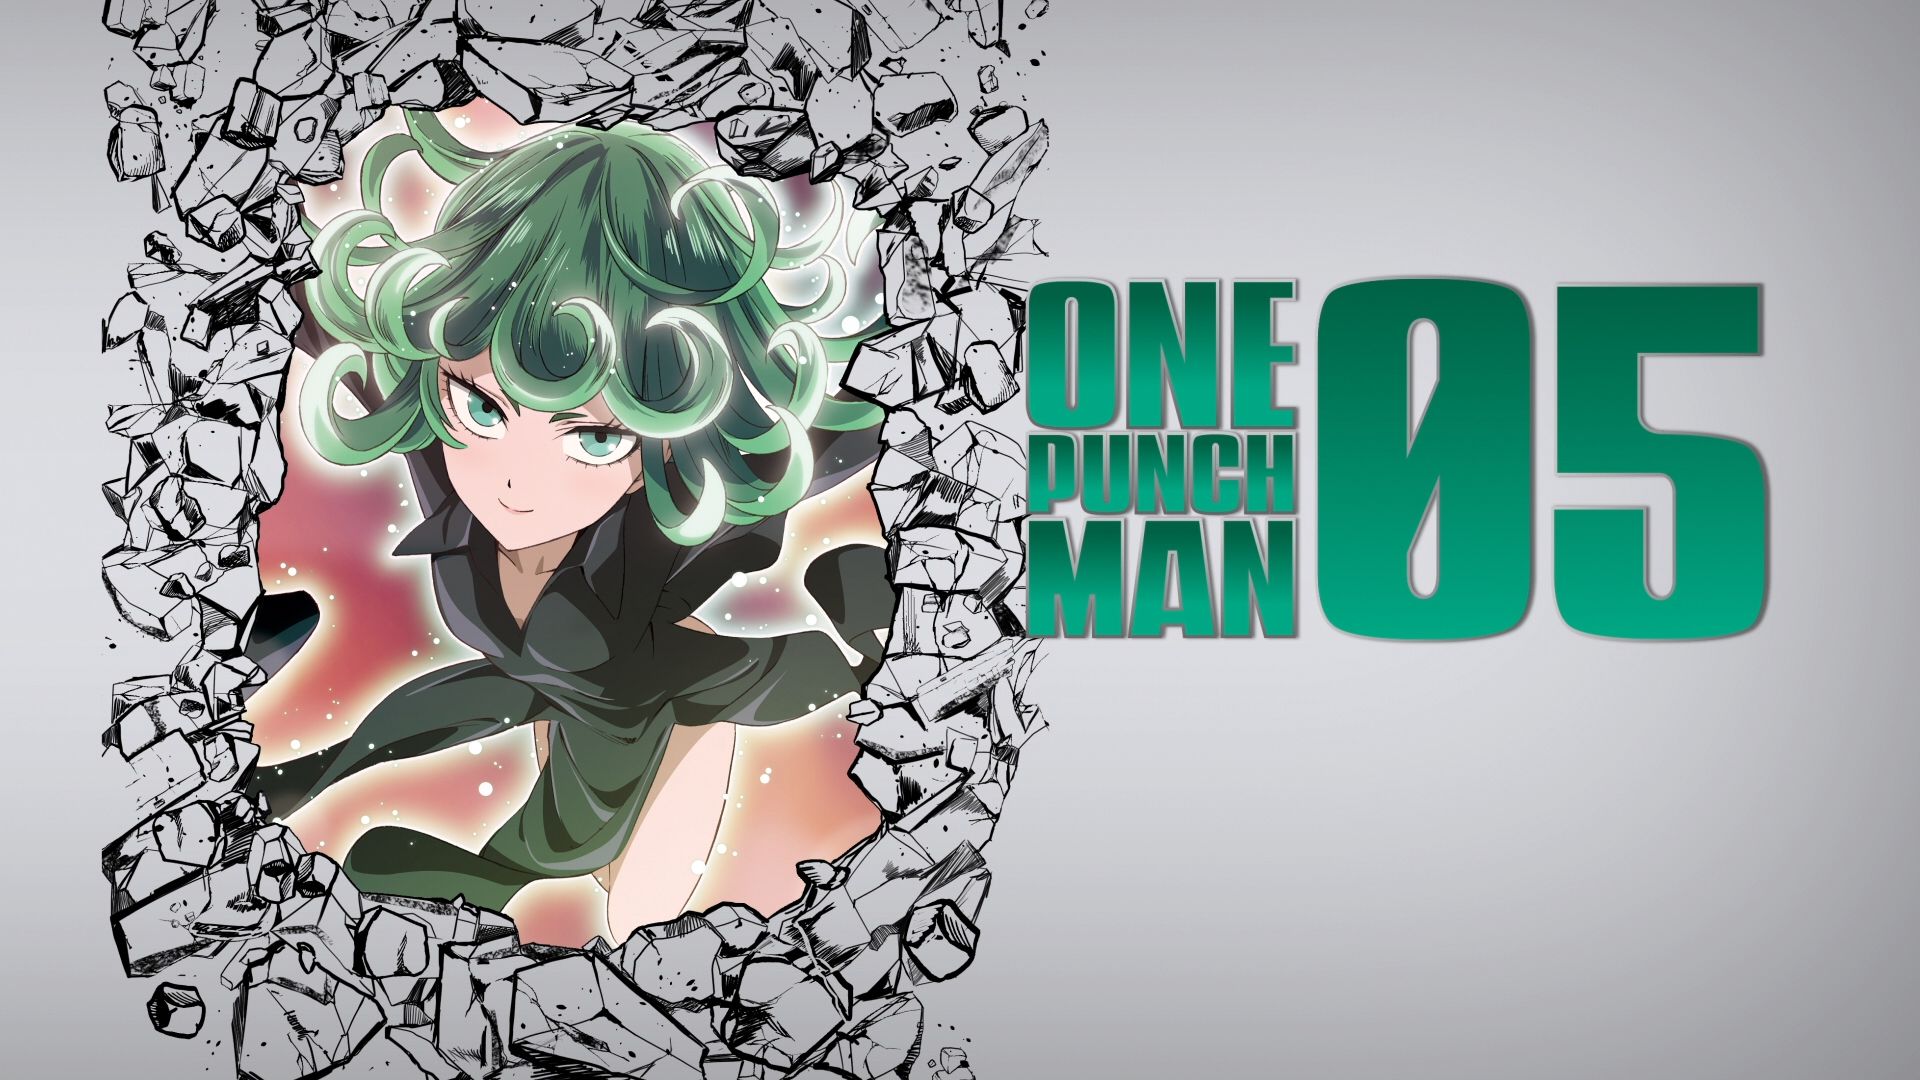 Descarga gratuita de fondo de pantalla para móvil de Animado, One Punch Man, Tatsumaki (Hombre De Un Solo Golpe).